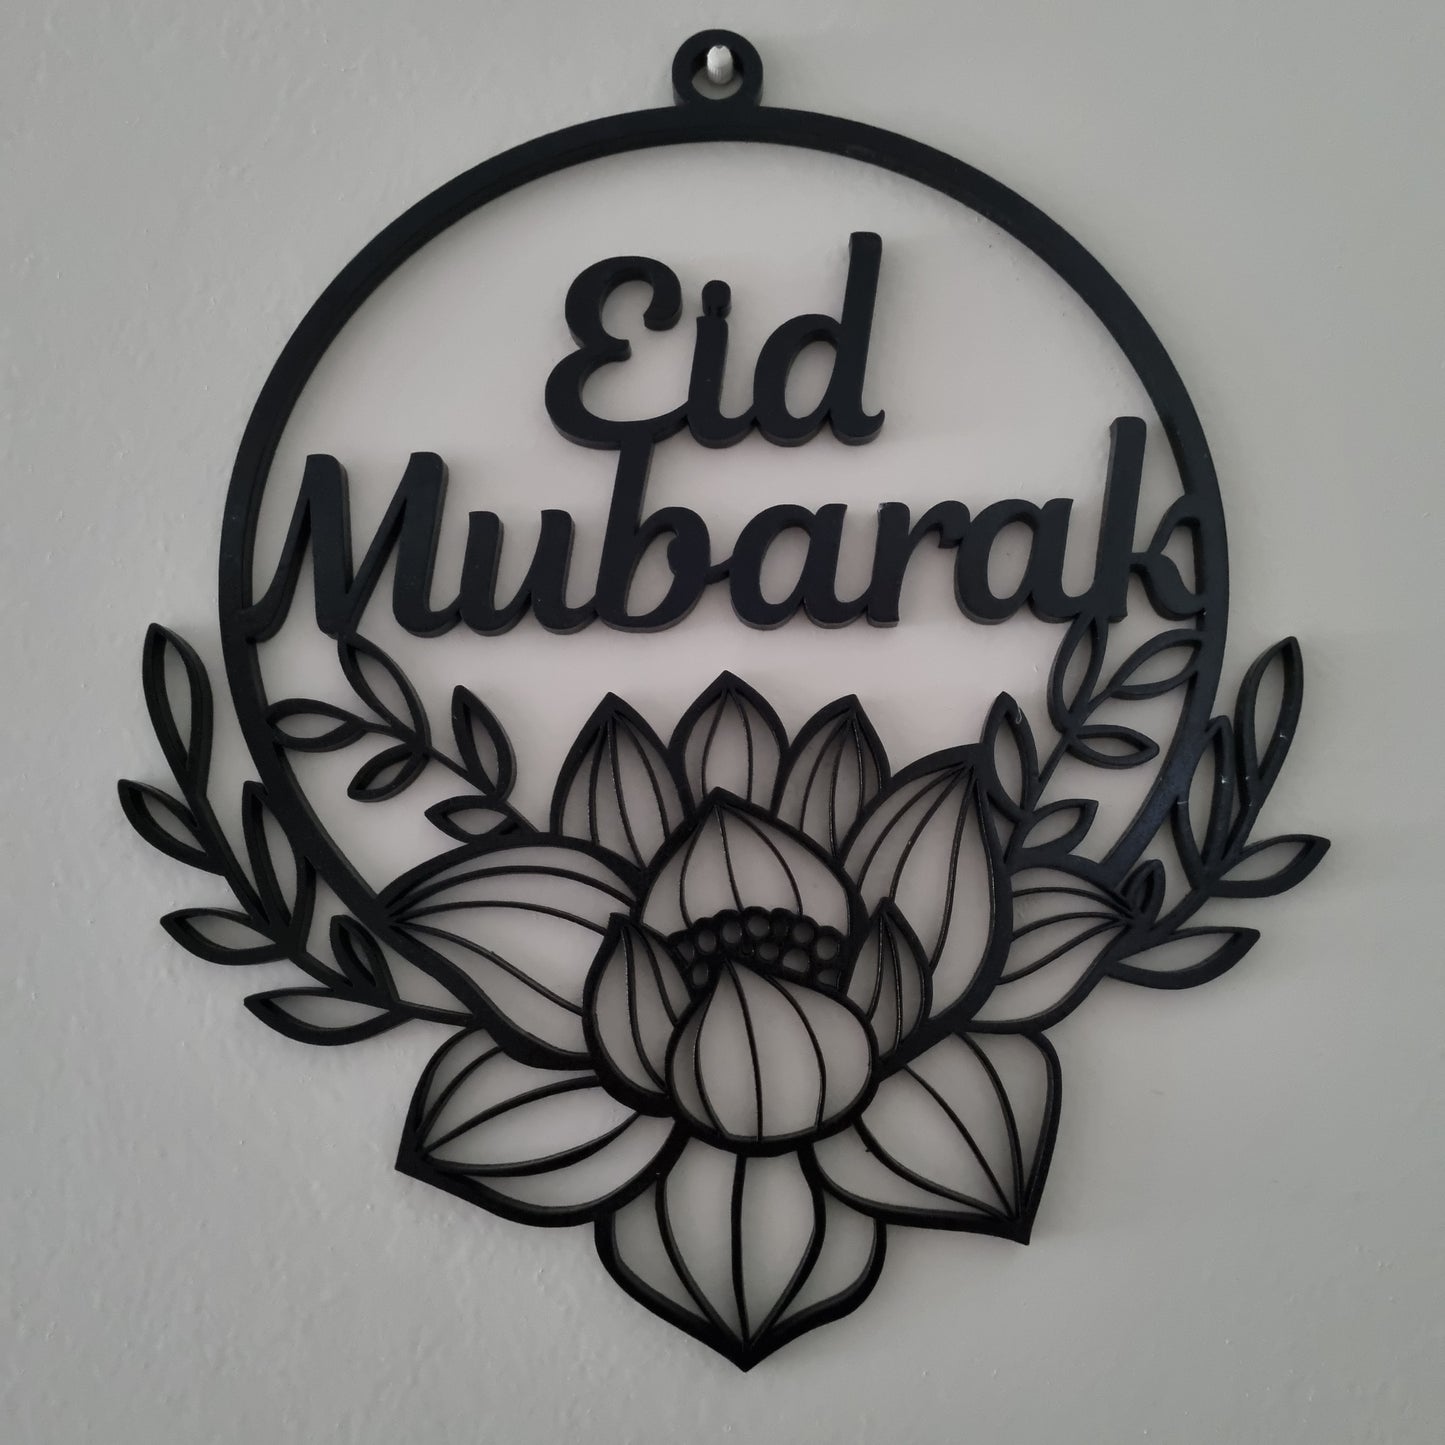 Eid Mubarak Wooden Wreath - Black